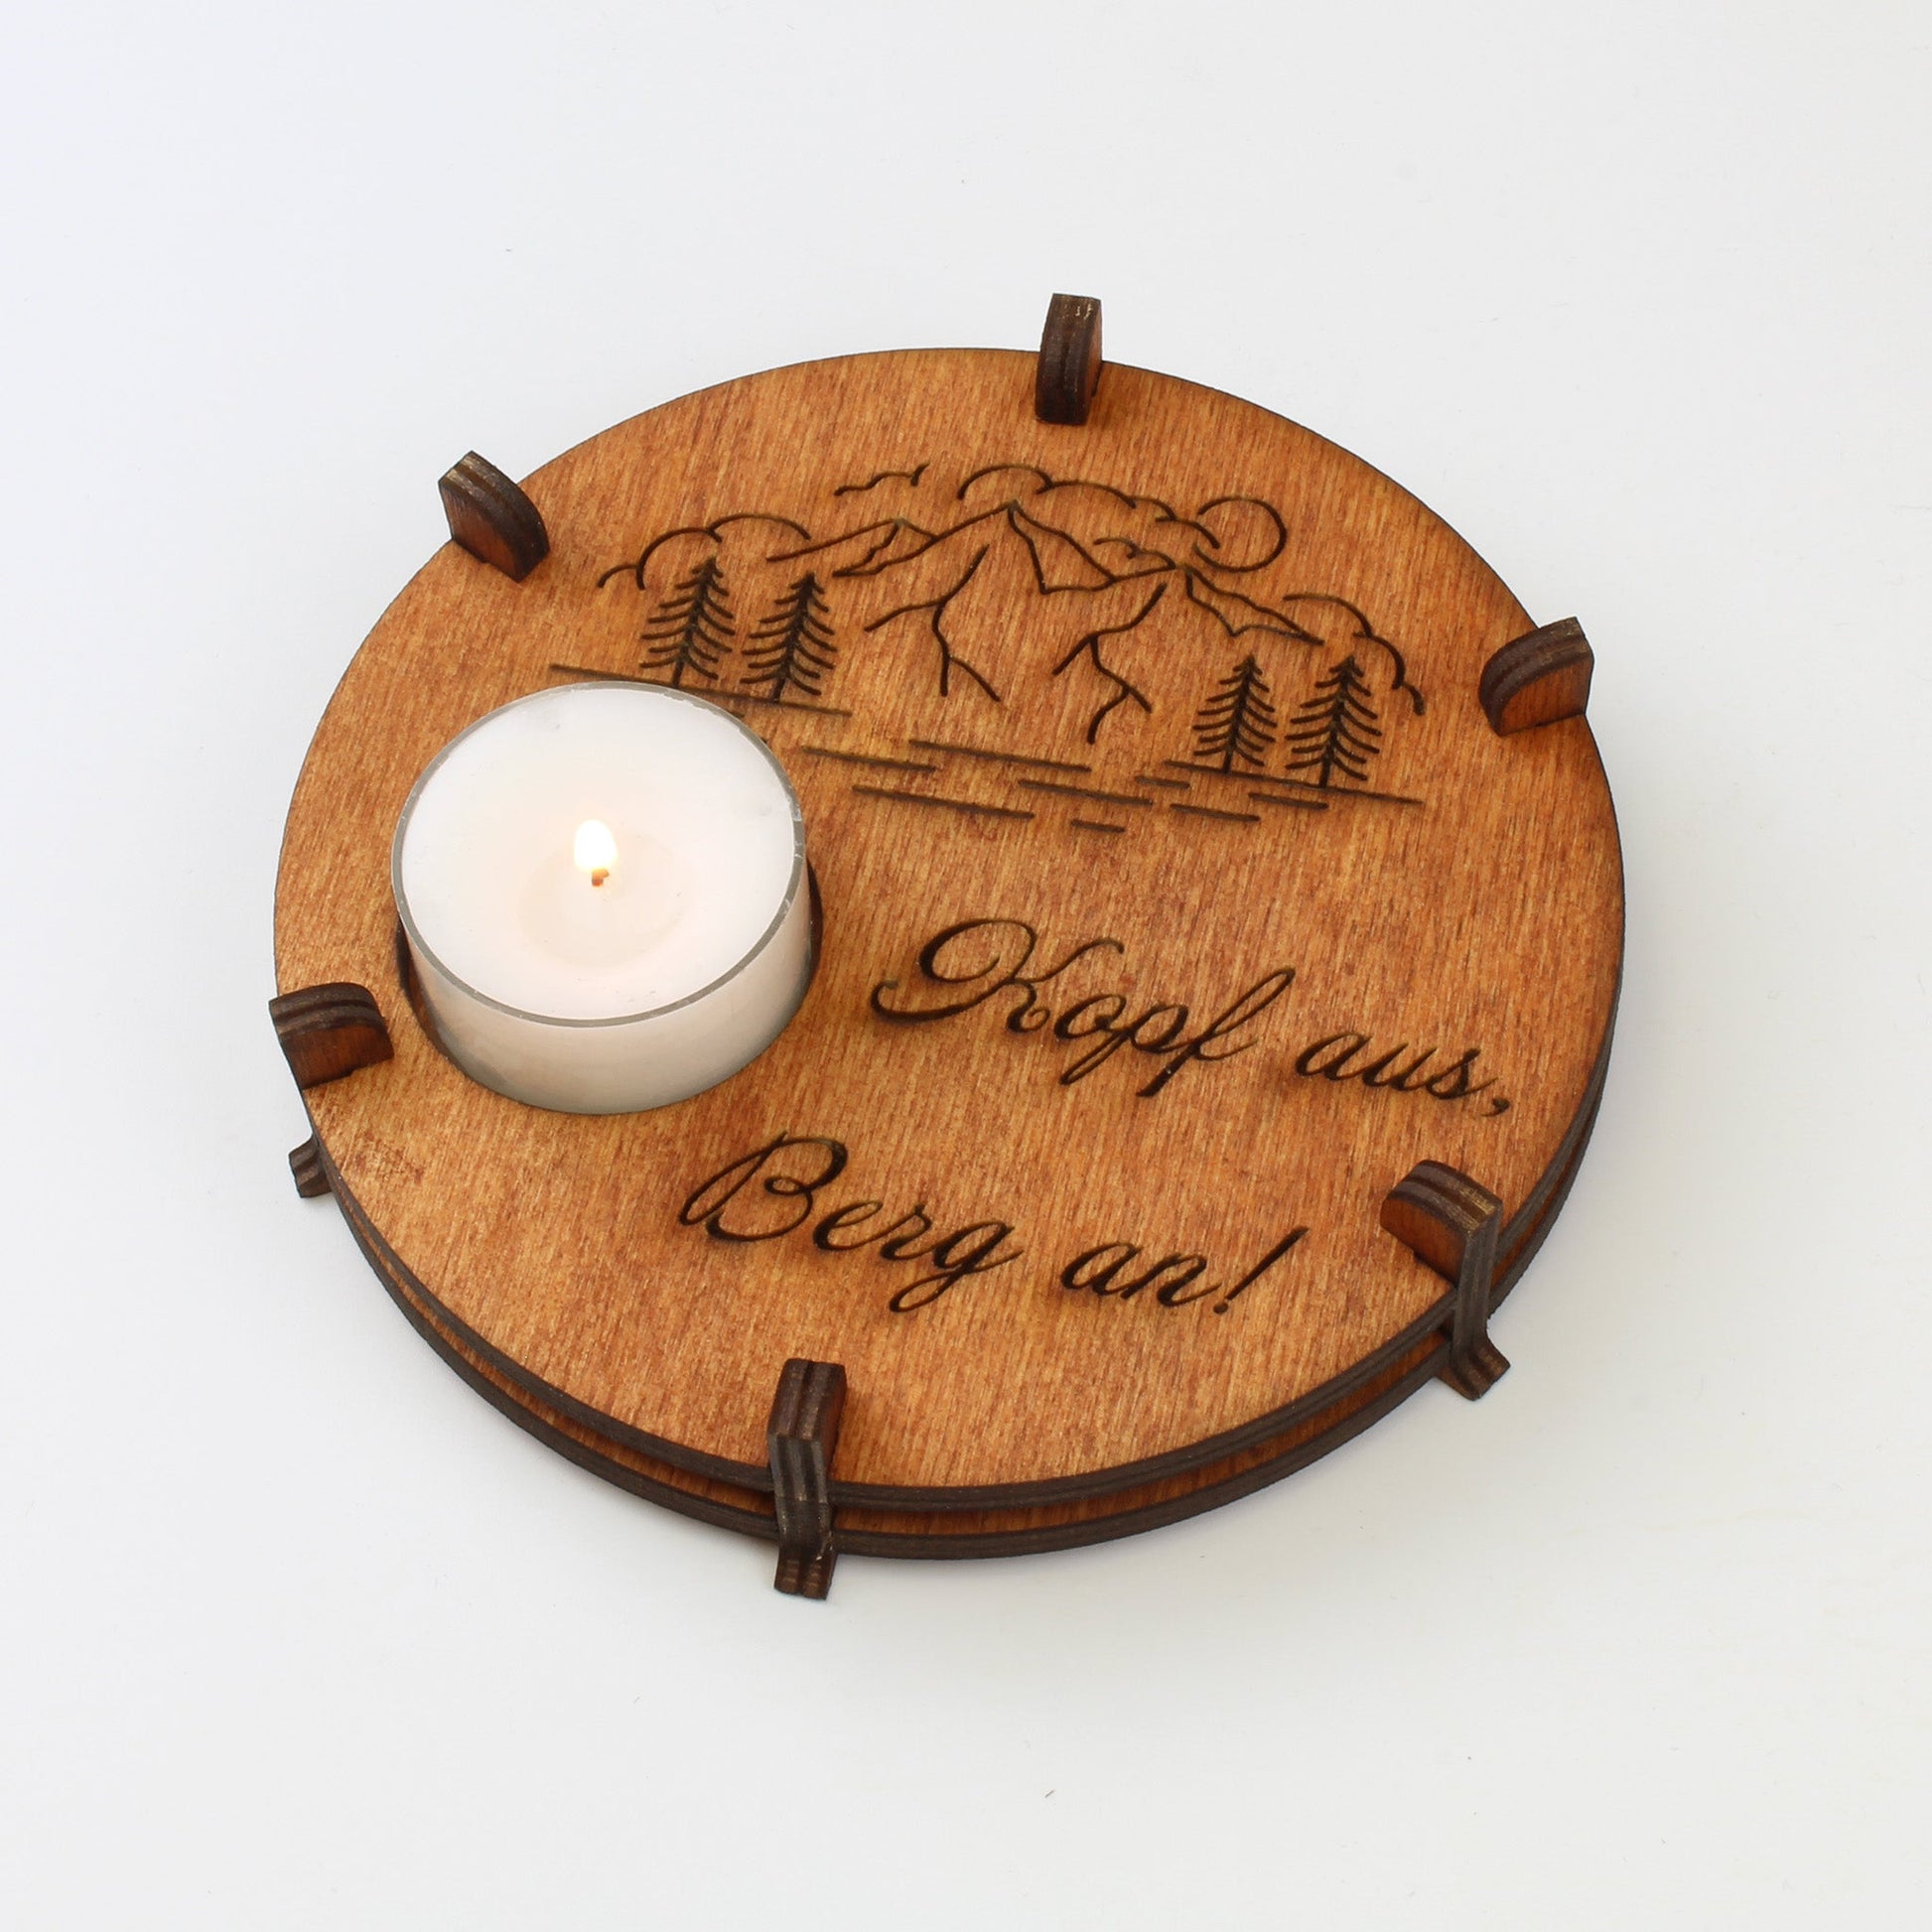 Teelichthalter Spruch "Kopf aus", Holz - Nanino Design Onlineshop -